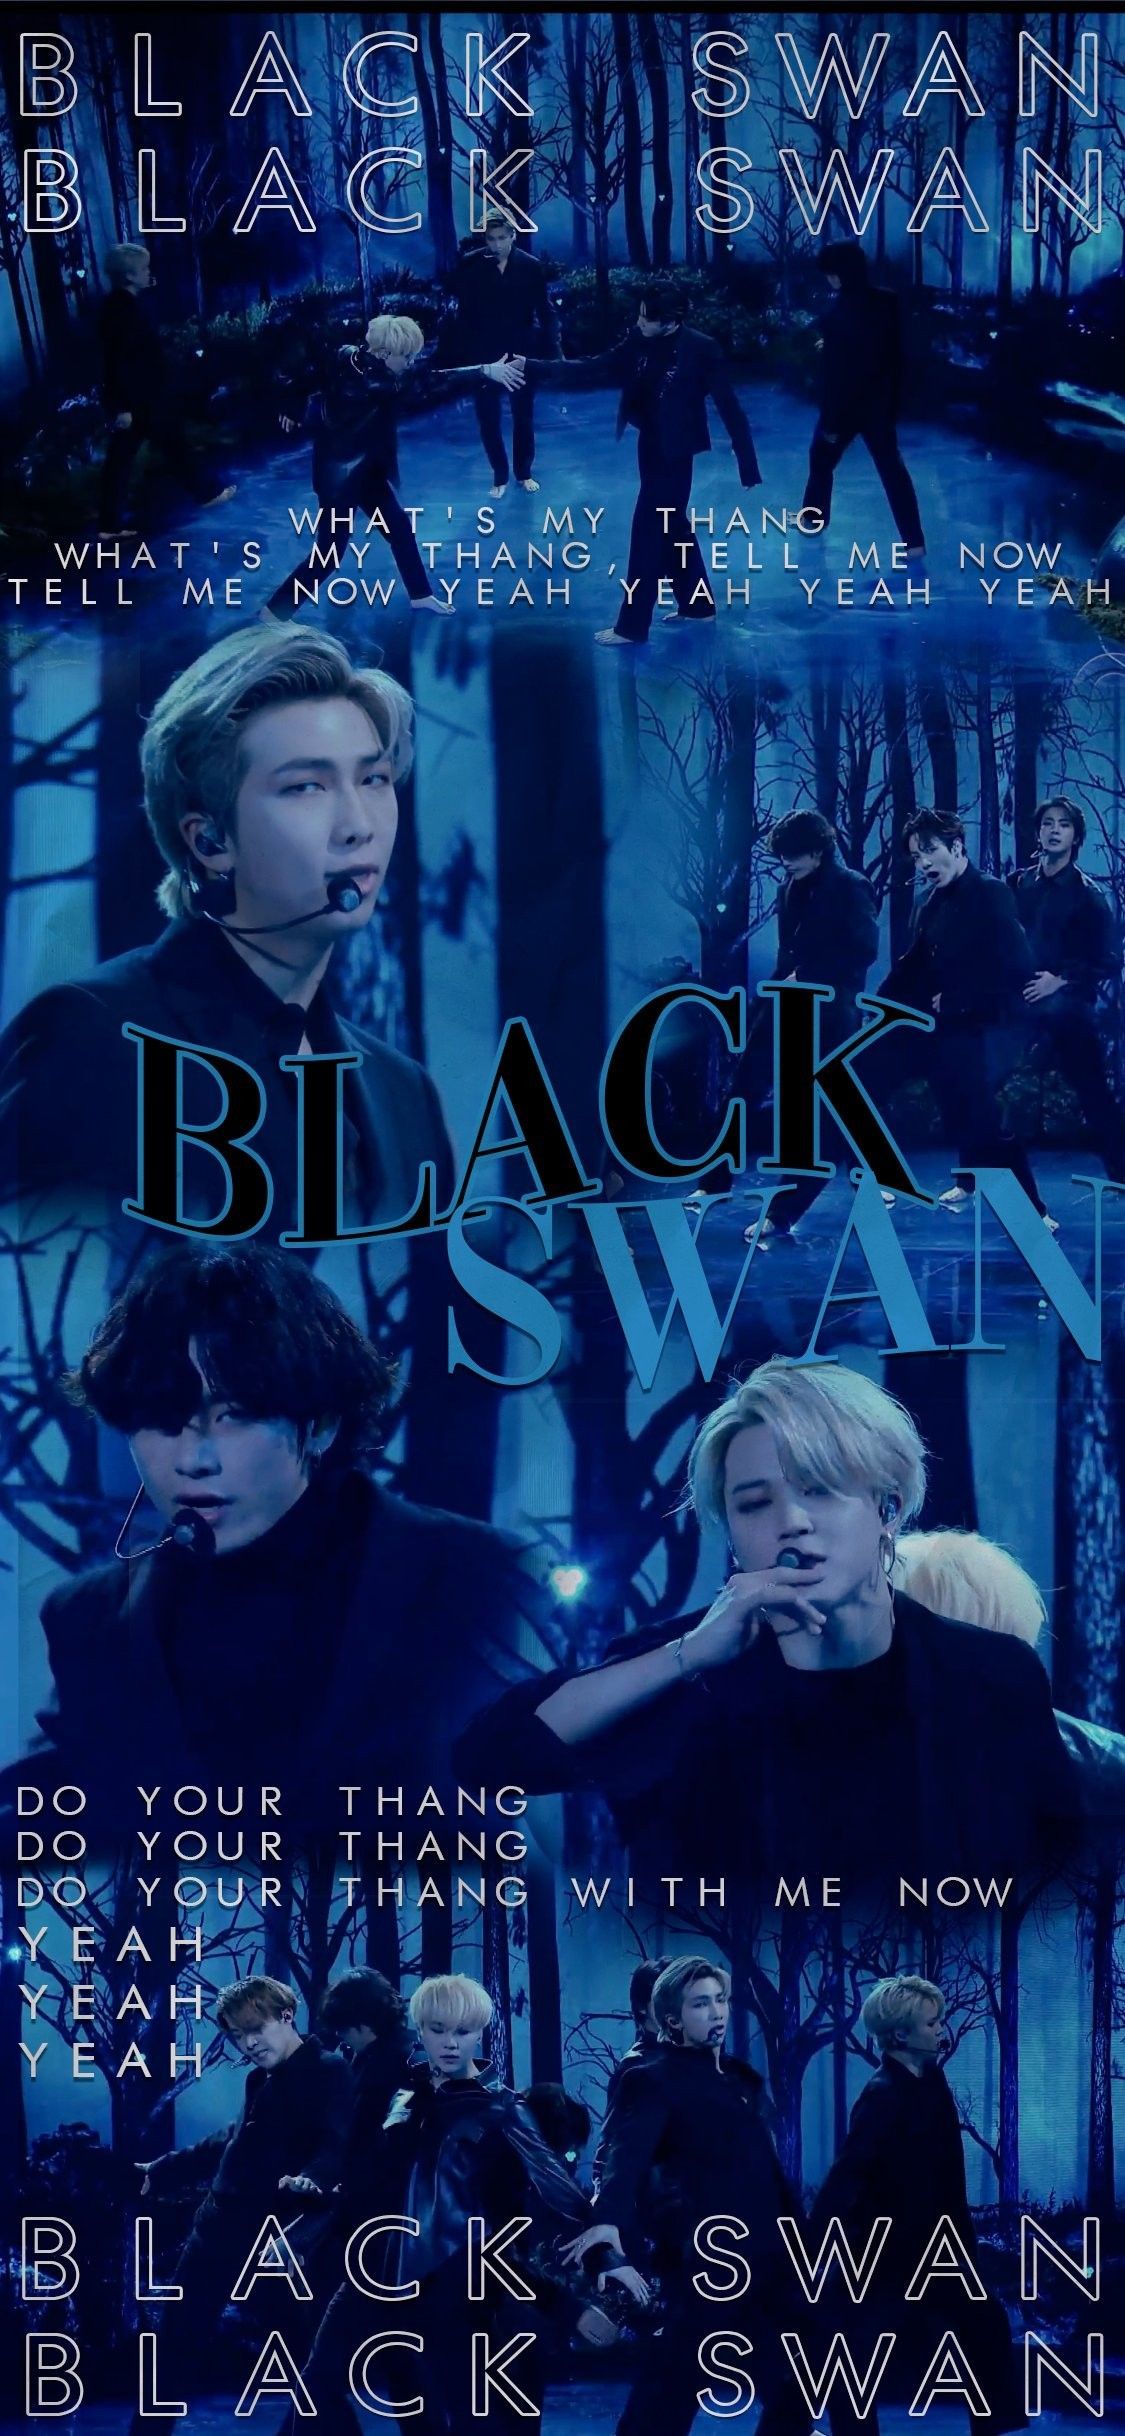 BTS Black Swan #wallpaper #Lockscreen. Bts wallpaper, Bts lockscreen, Bts